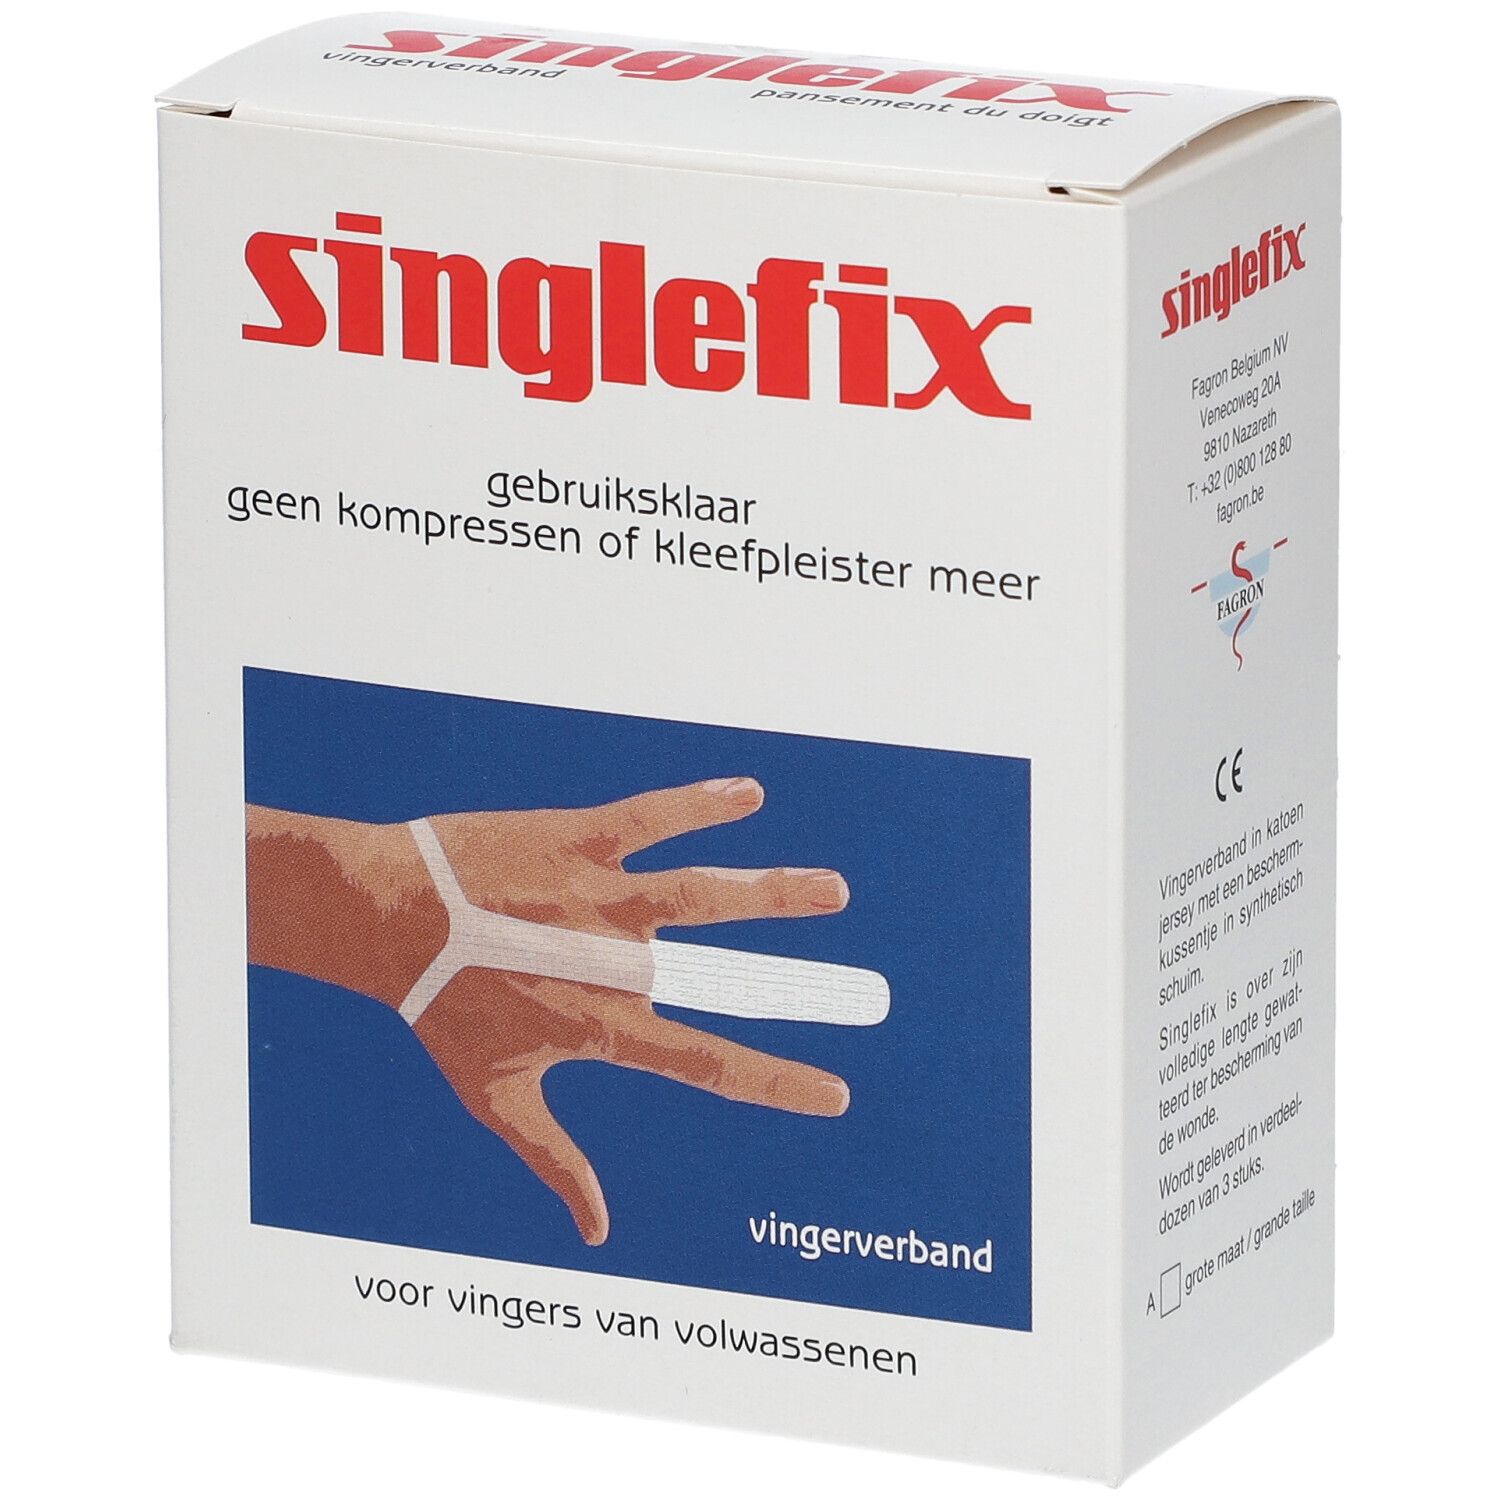 Surgifix Singlefix® Pansements pour doigts Taille A